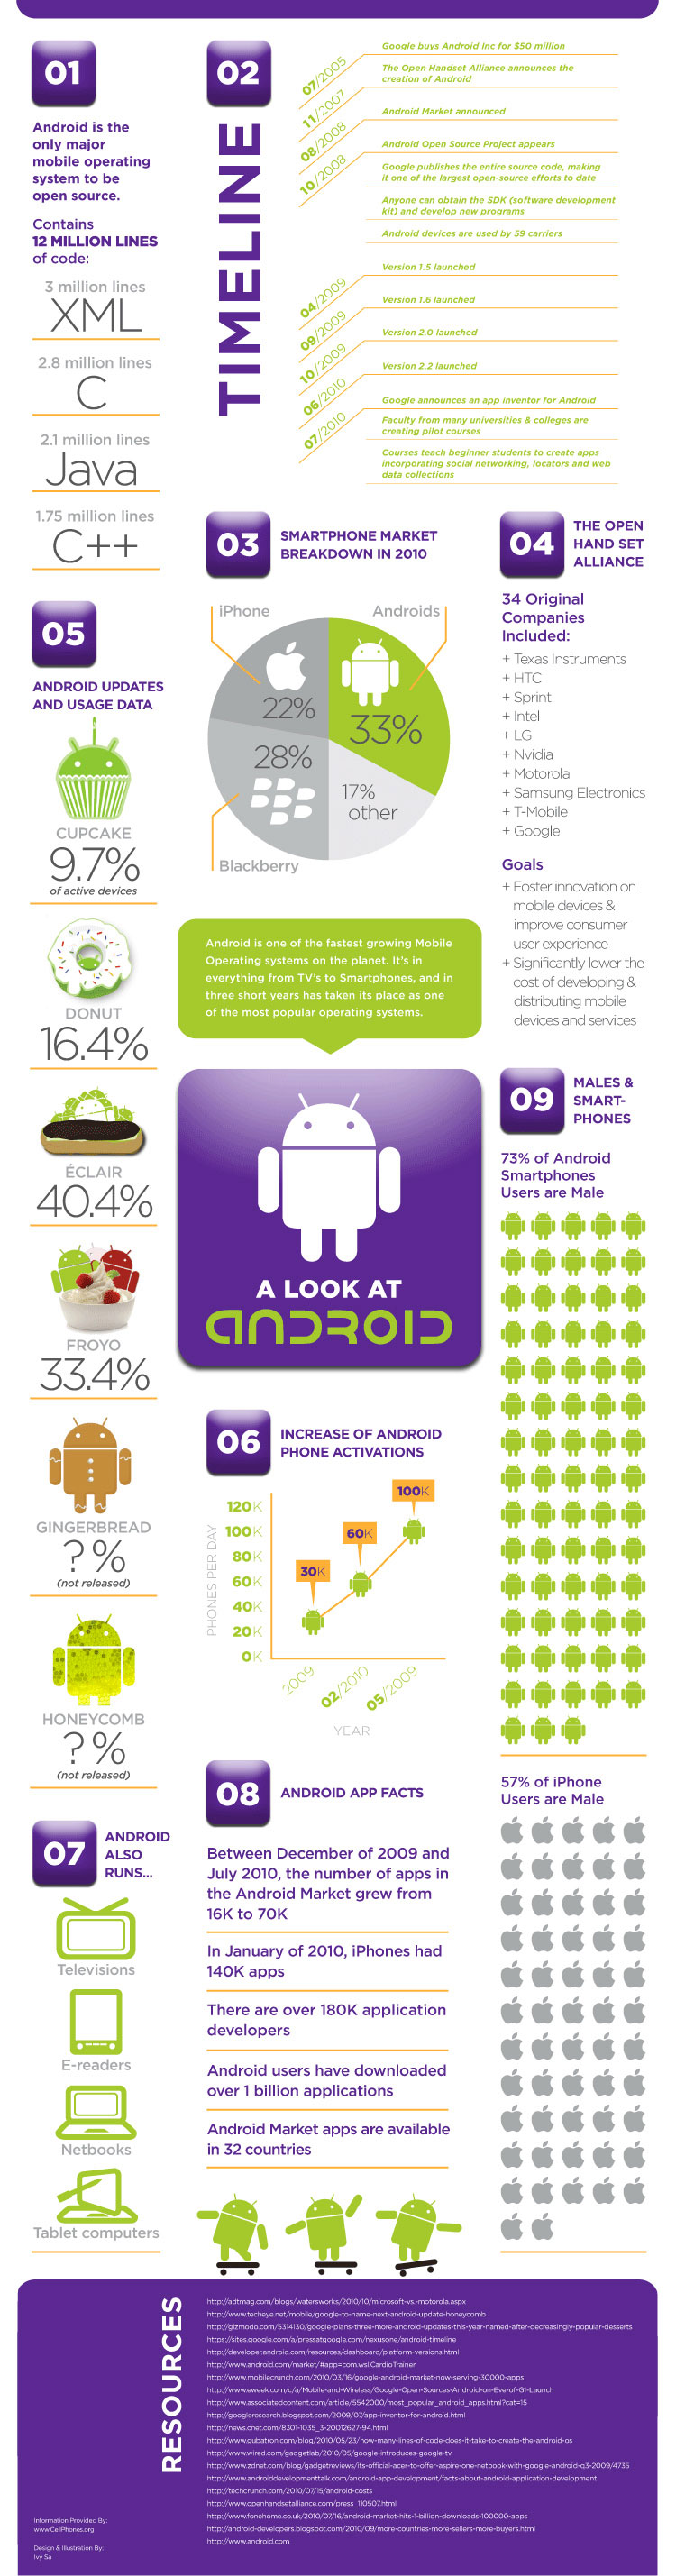 Tout savoir sur Google Android